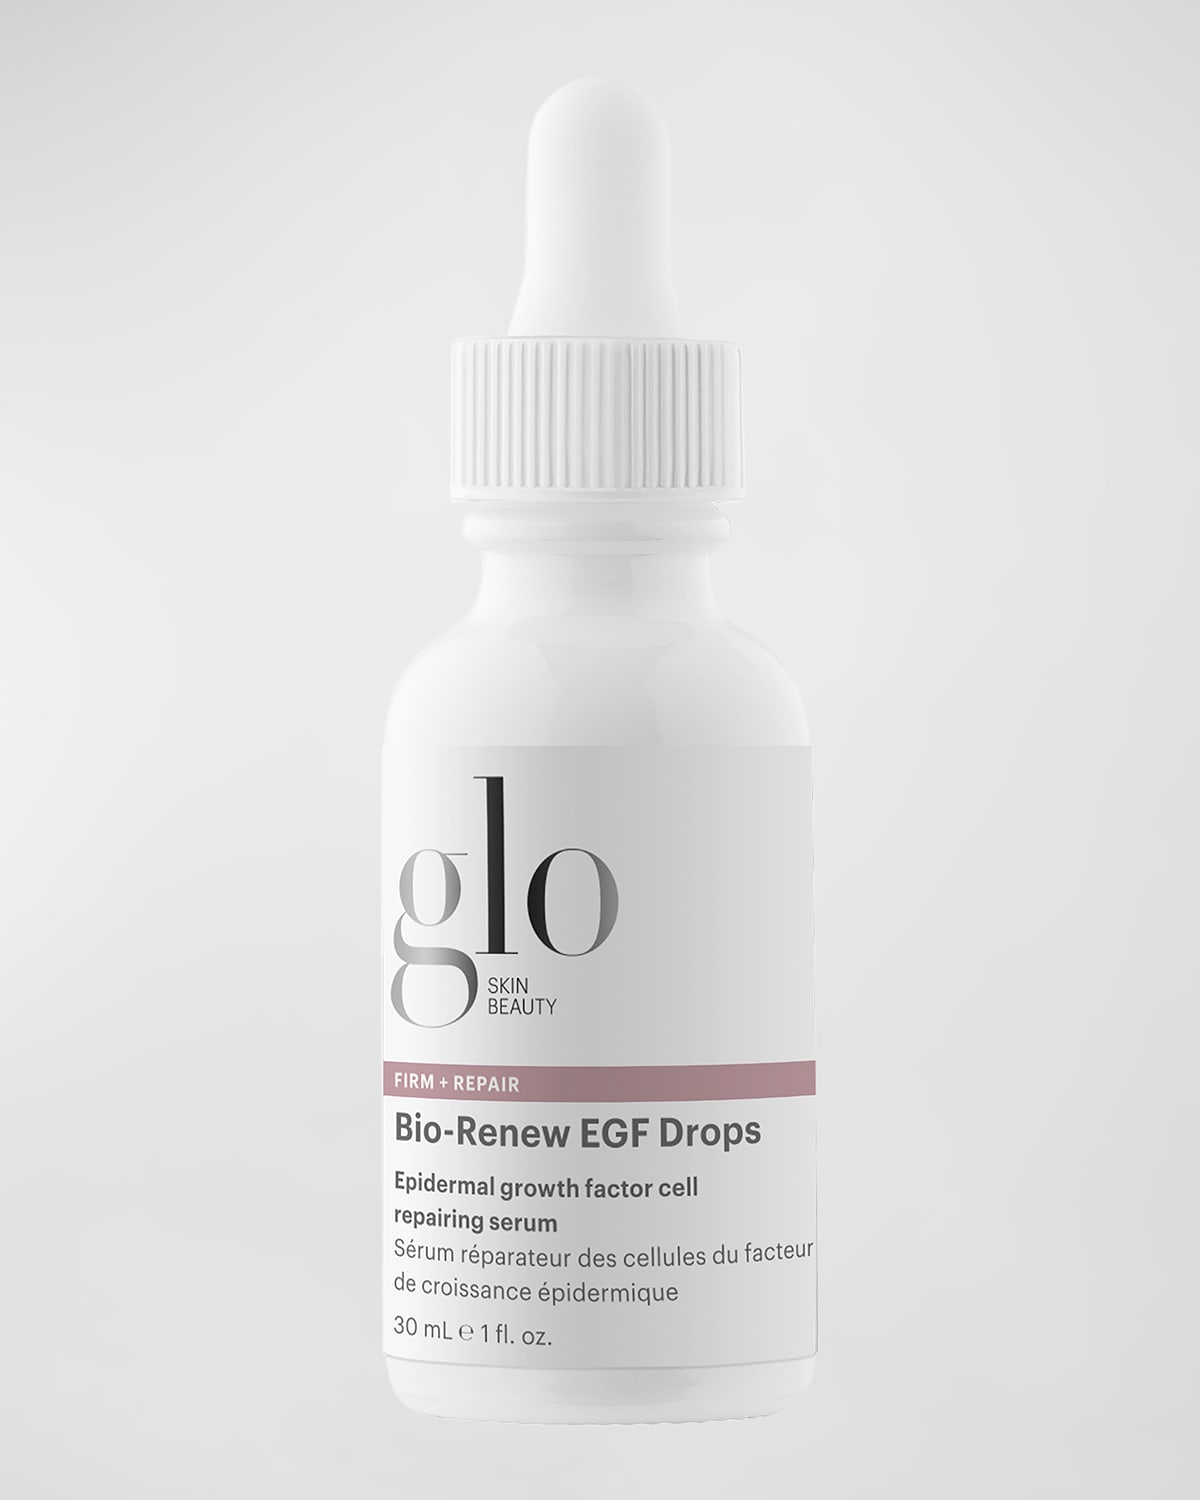 Bio-Renew EGF Drops, 1 oz.